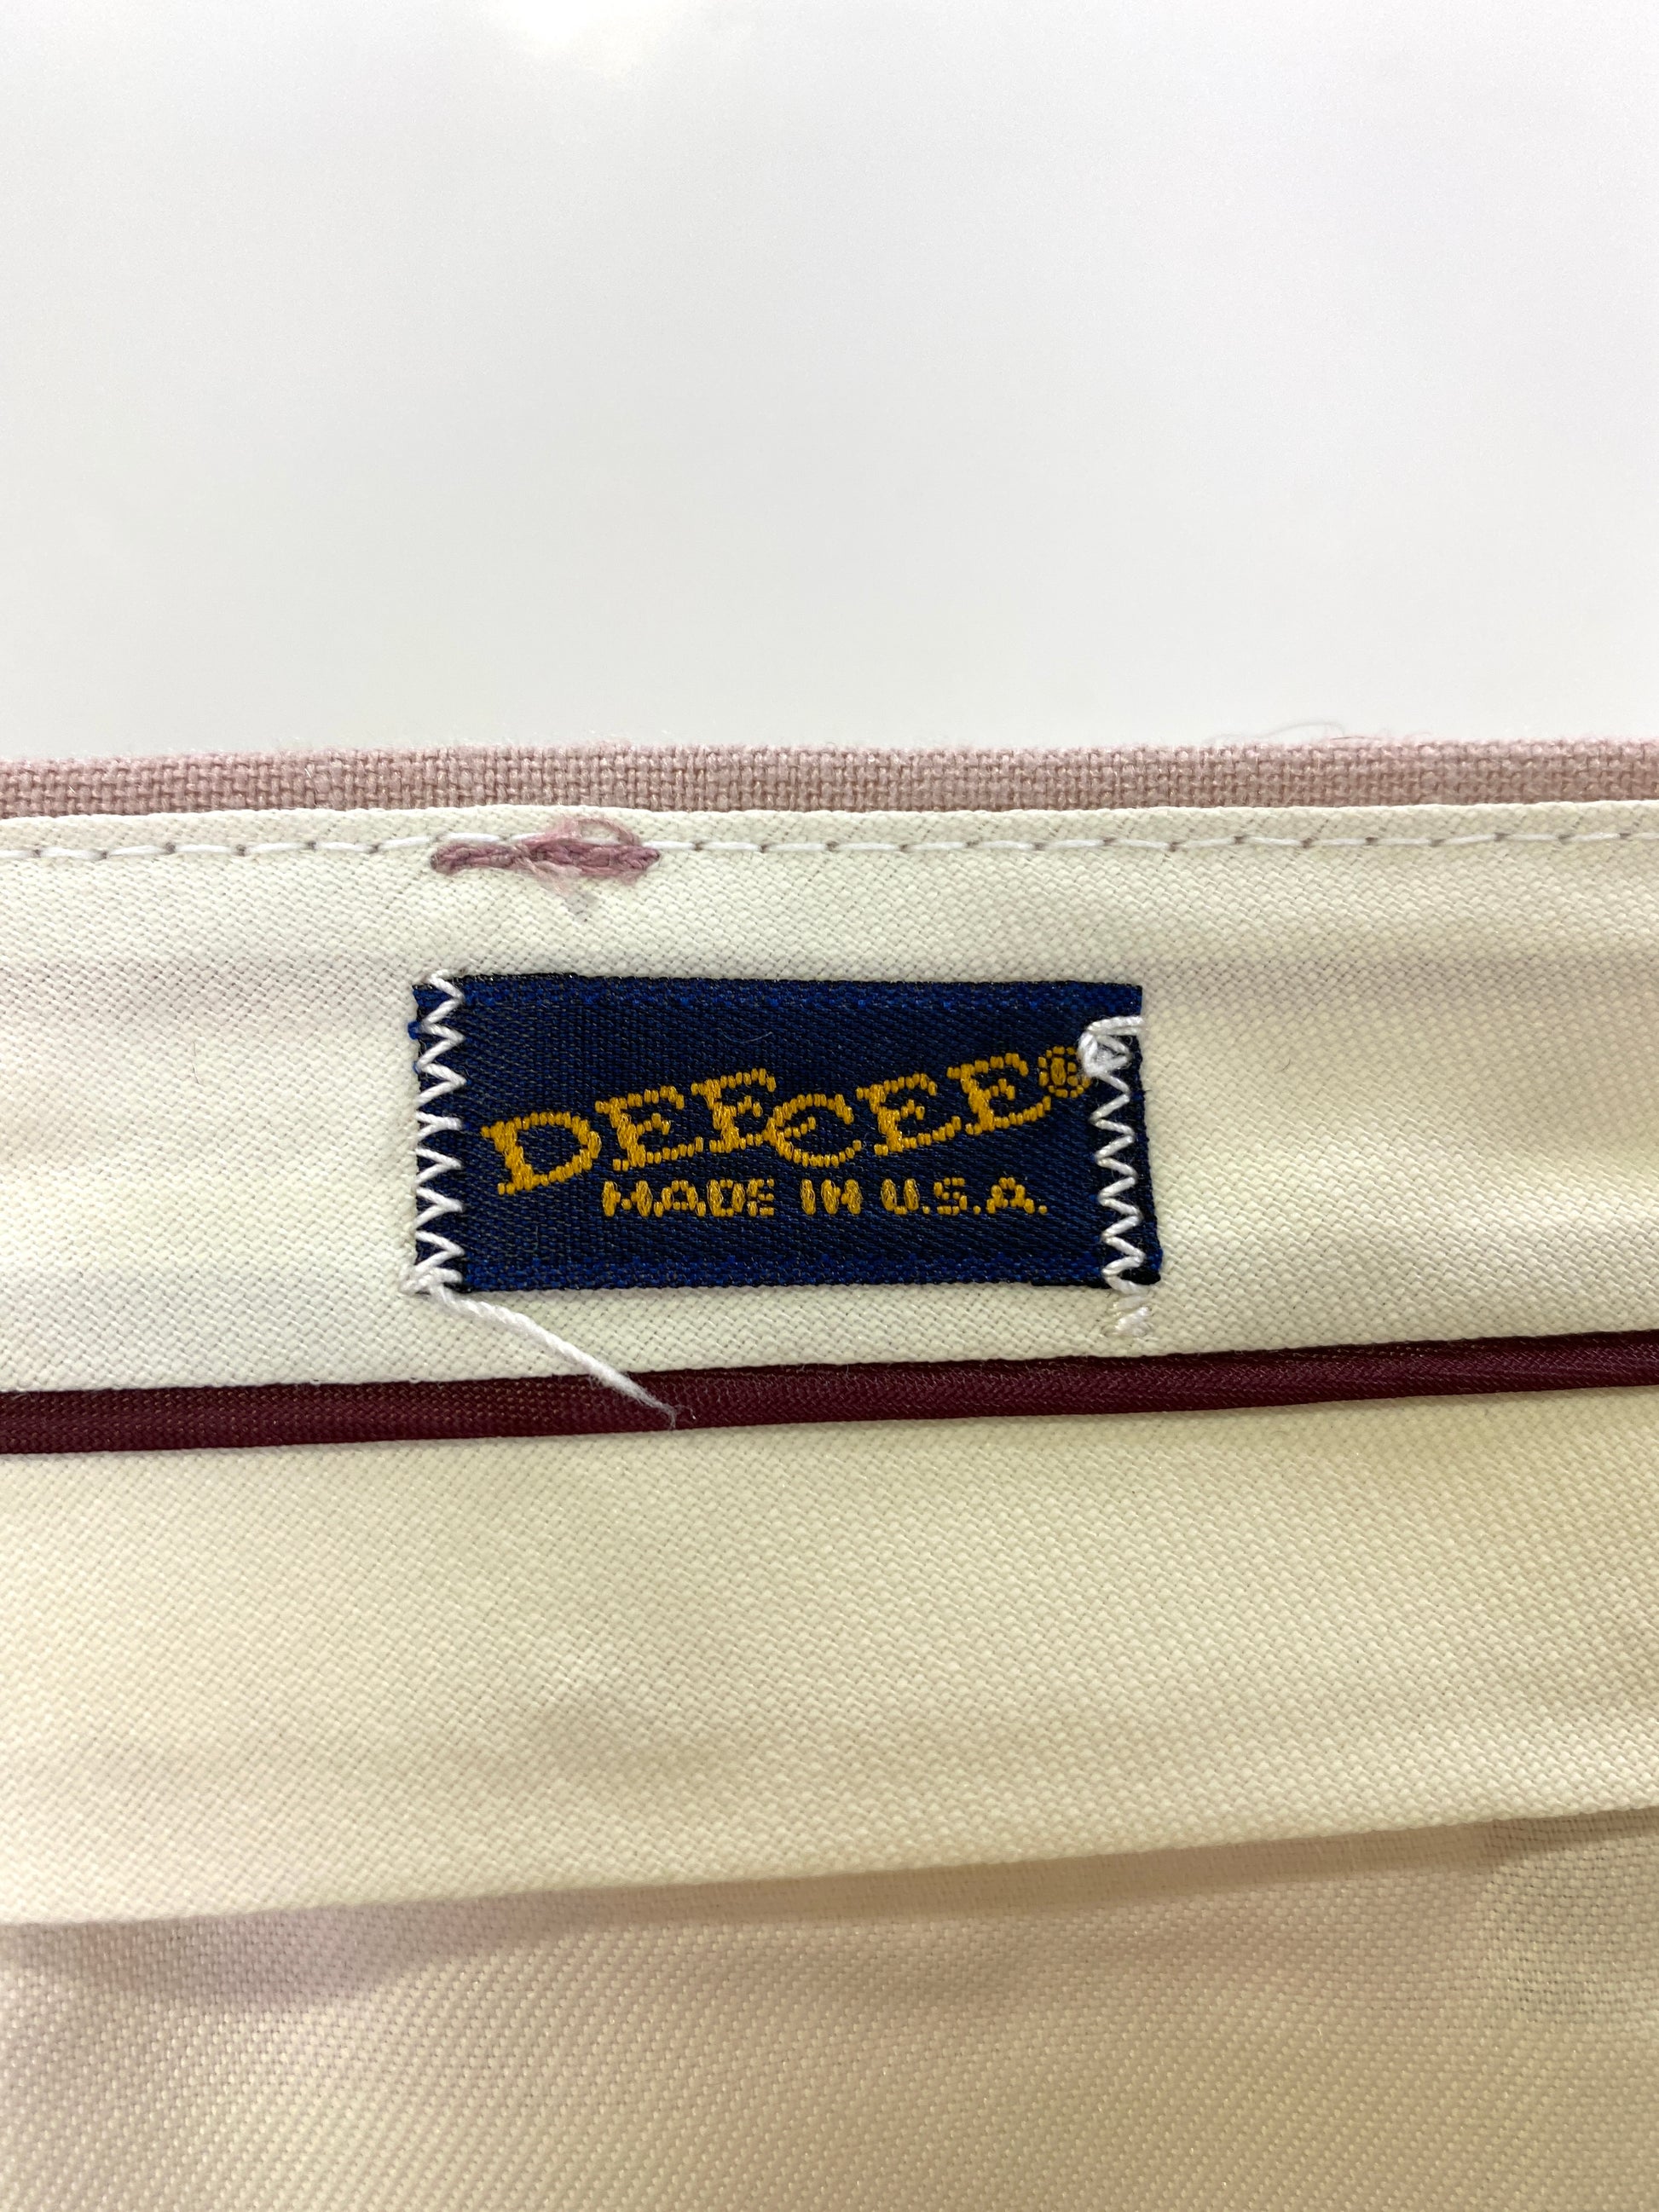 Vintage 1970s Deadstock Dee Cee Slacks, Men's Pink Linen-Look Pants, NOS